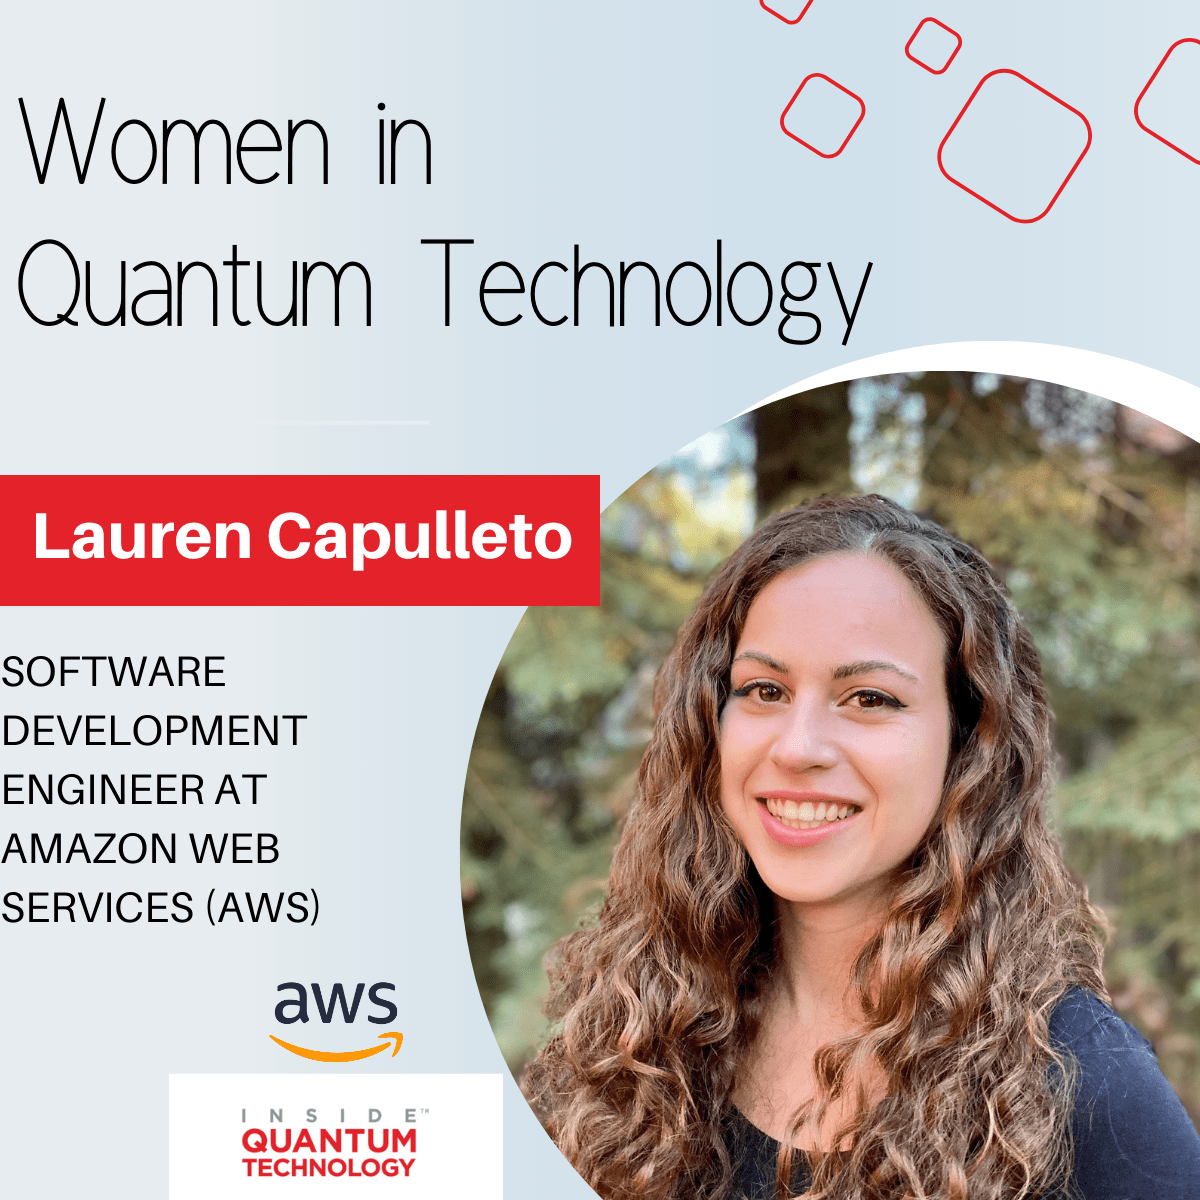 Amazon Web Services (AWS) Yazılım Geliştirme Mühendisi Lauren Capulleto, kuantum endüstrisine girişle ilgili hikayesini anlatıyor.